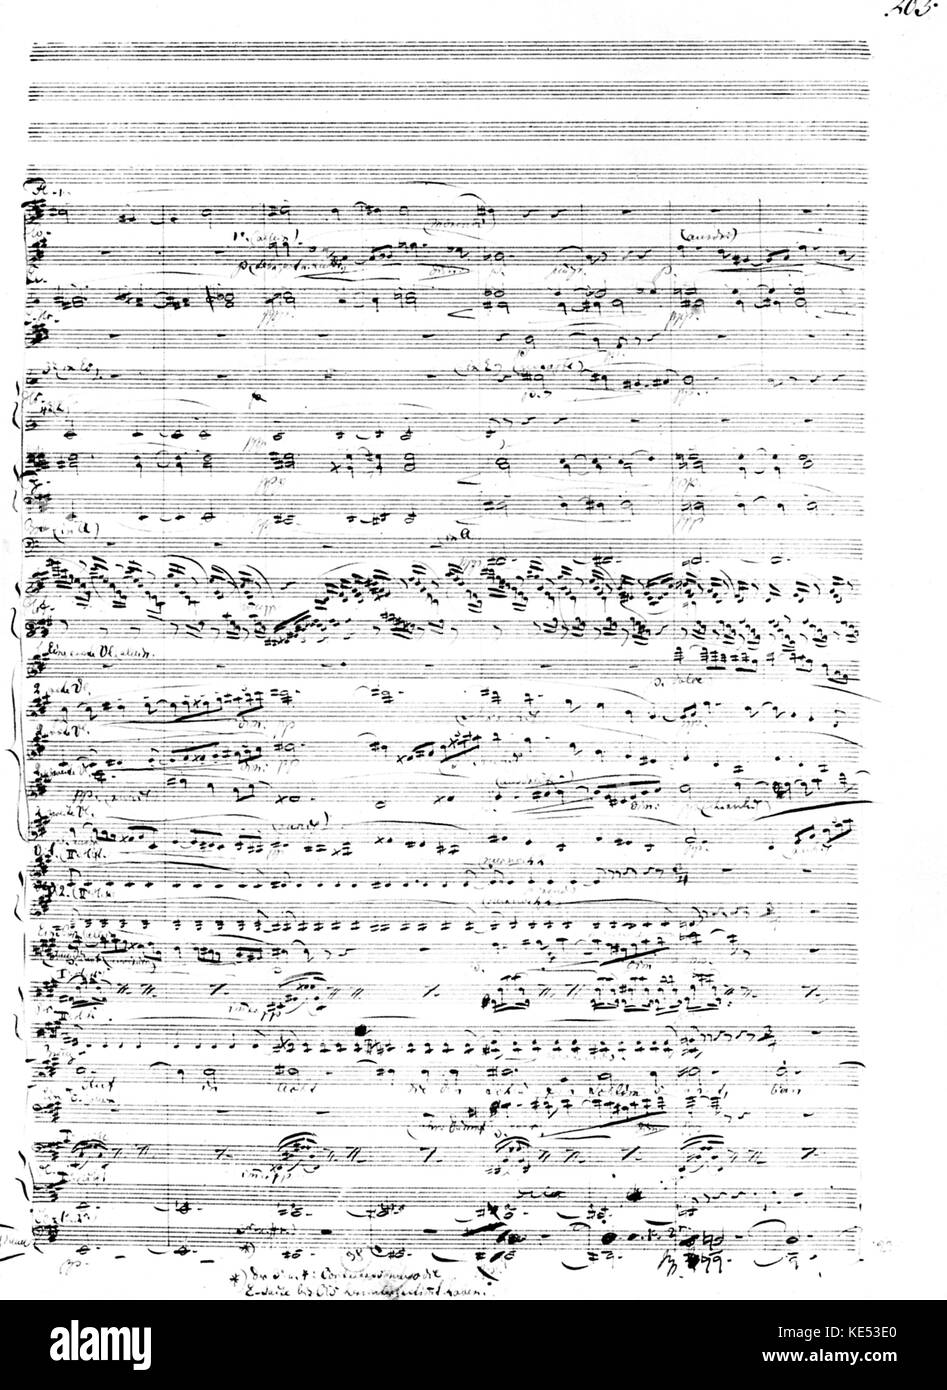 Richard Wagner 's Tristan und Isolde. Pagina dalla partitura originale. Compositore tedesco & autore, 22 maggio 1813 - 13 febbraio 1883. Foto Stock